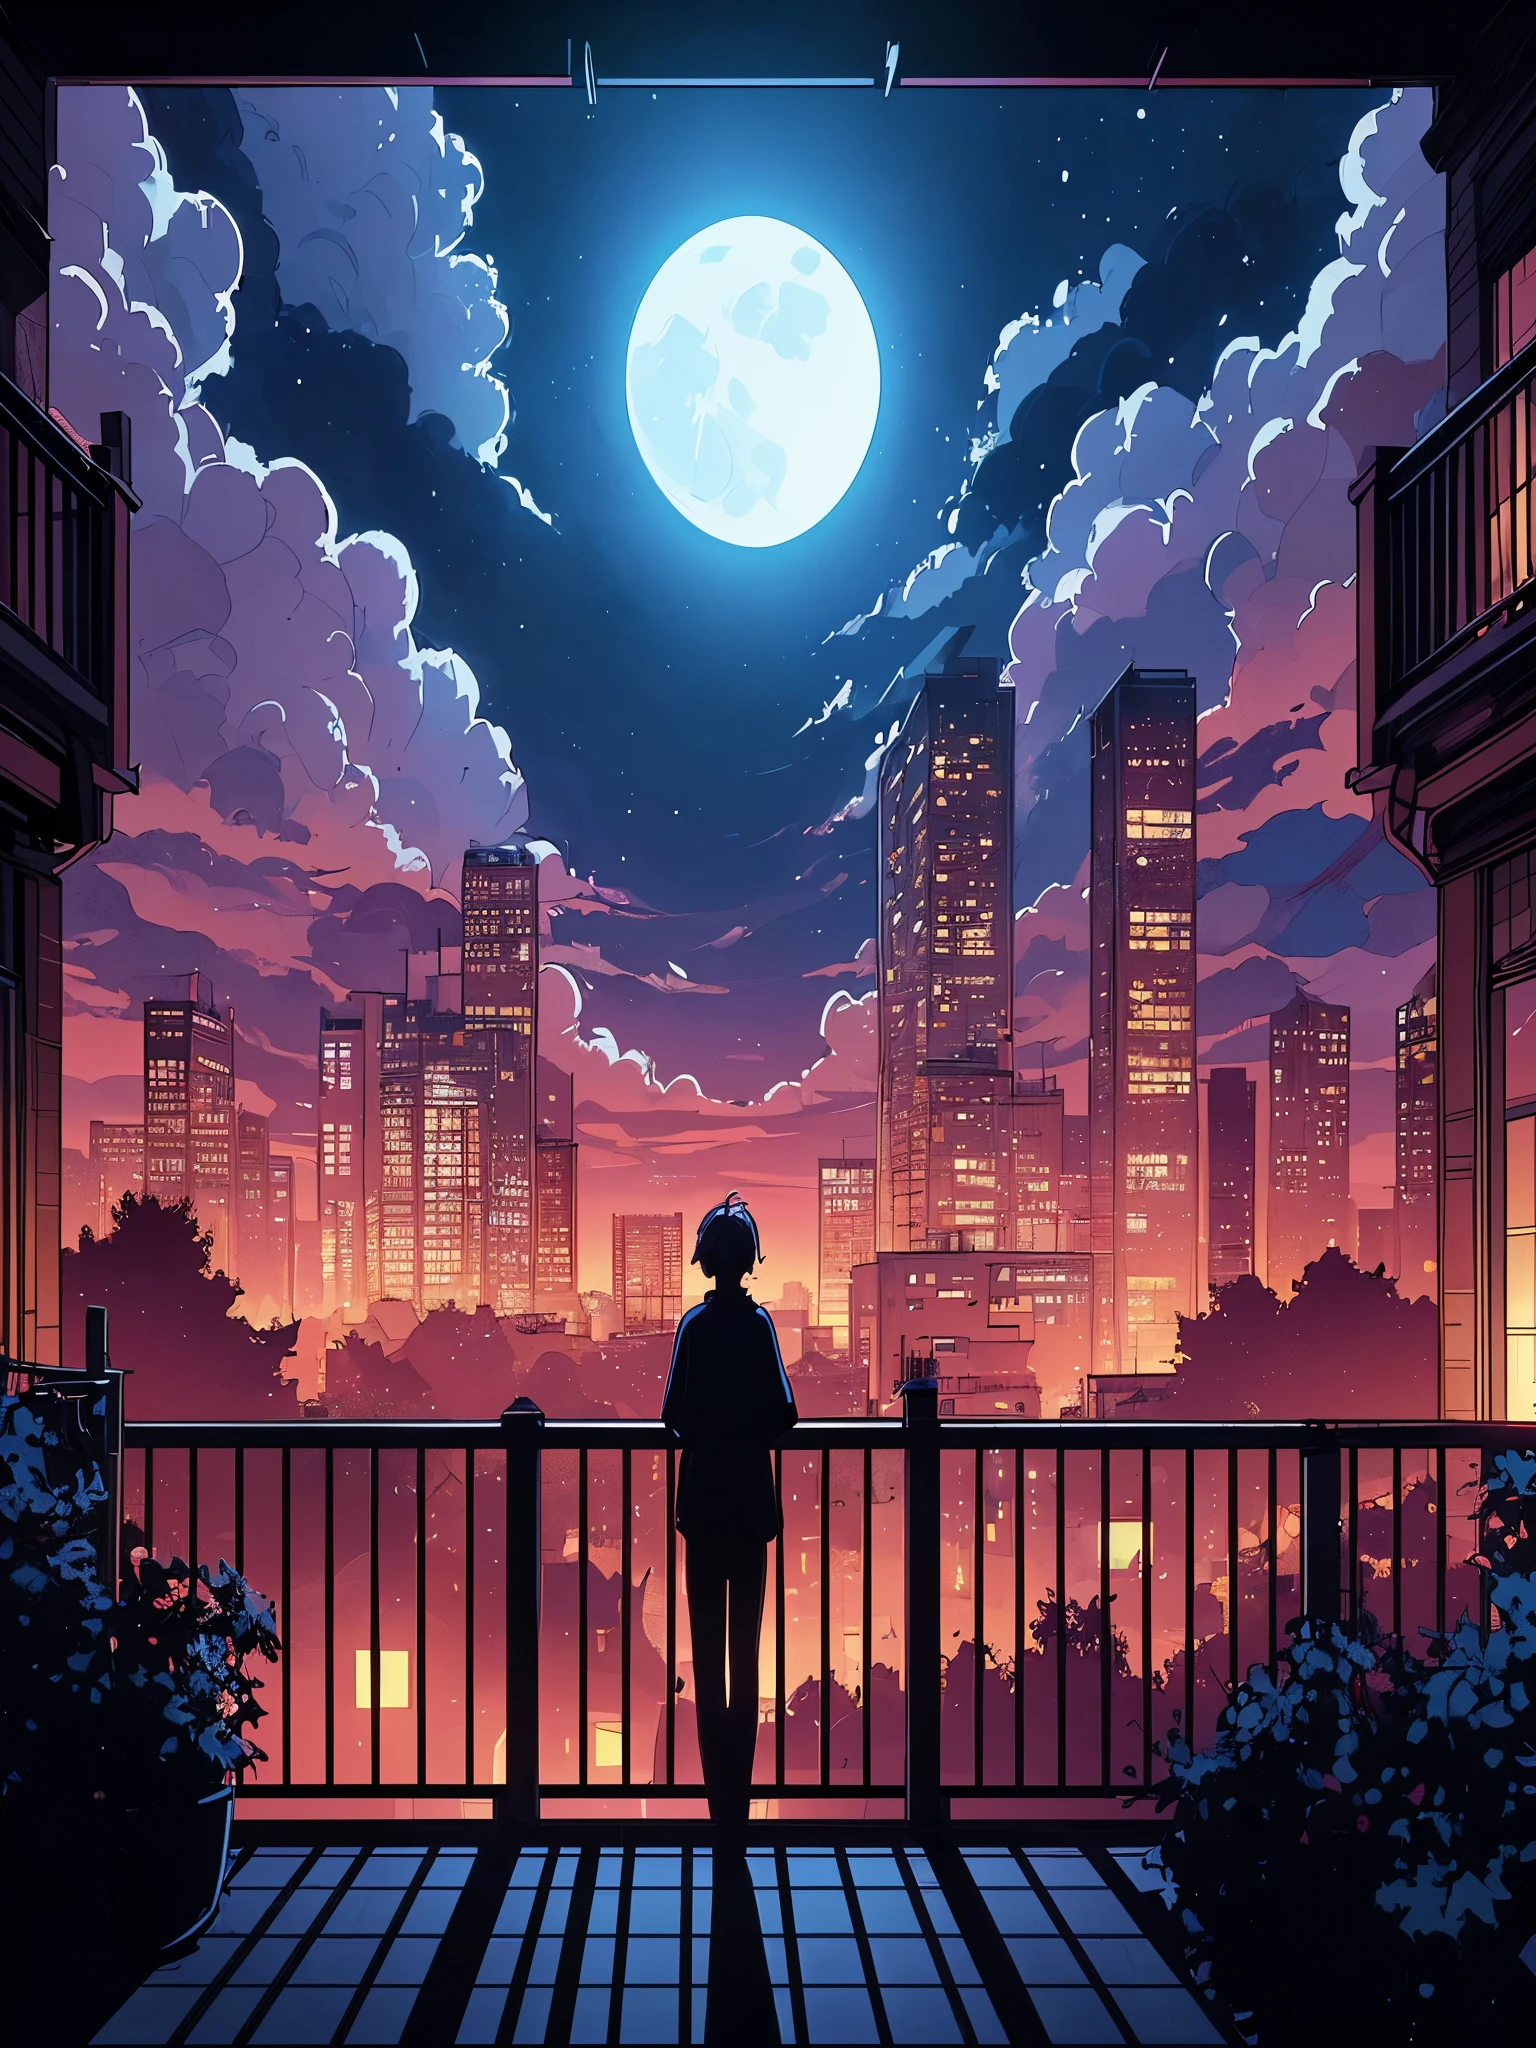 Zeichnen Sie eine digitale, einfache Anime-Strichzeichnung einer weiten Lofi-Szene mit Aussicht vom Balkon, ein weiteres Gebäude sichtbar mit Silhouette von Menschen, die auf ihrem Balkon stehen, schwaches Mondlicht,, schwachem Licht, schöner bewölkter Himmel, lebendige Farbtöne, Meisterwerk, friedliche Szene